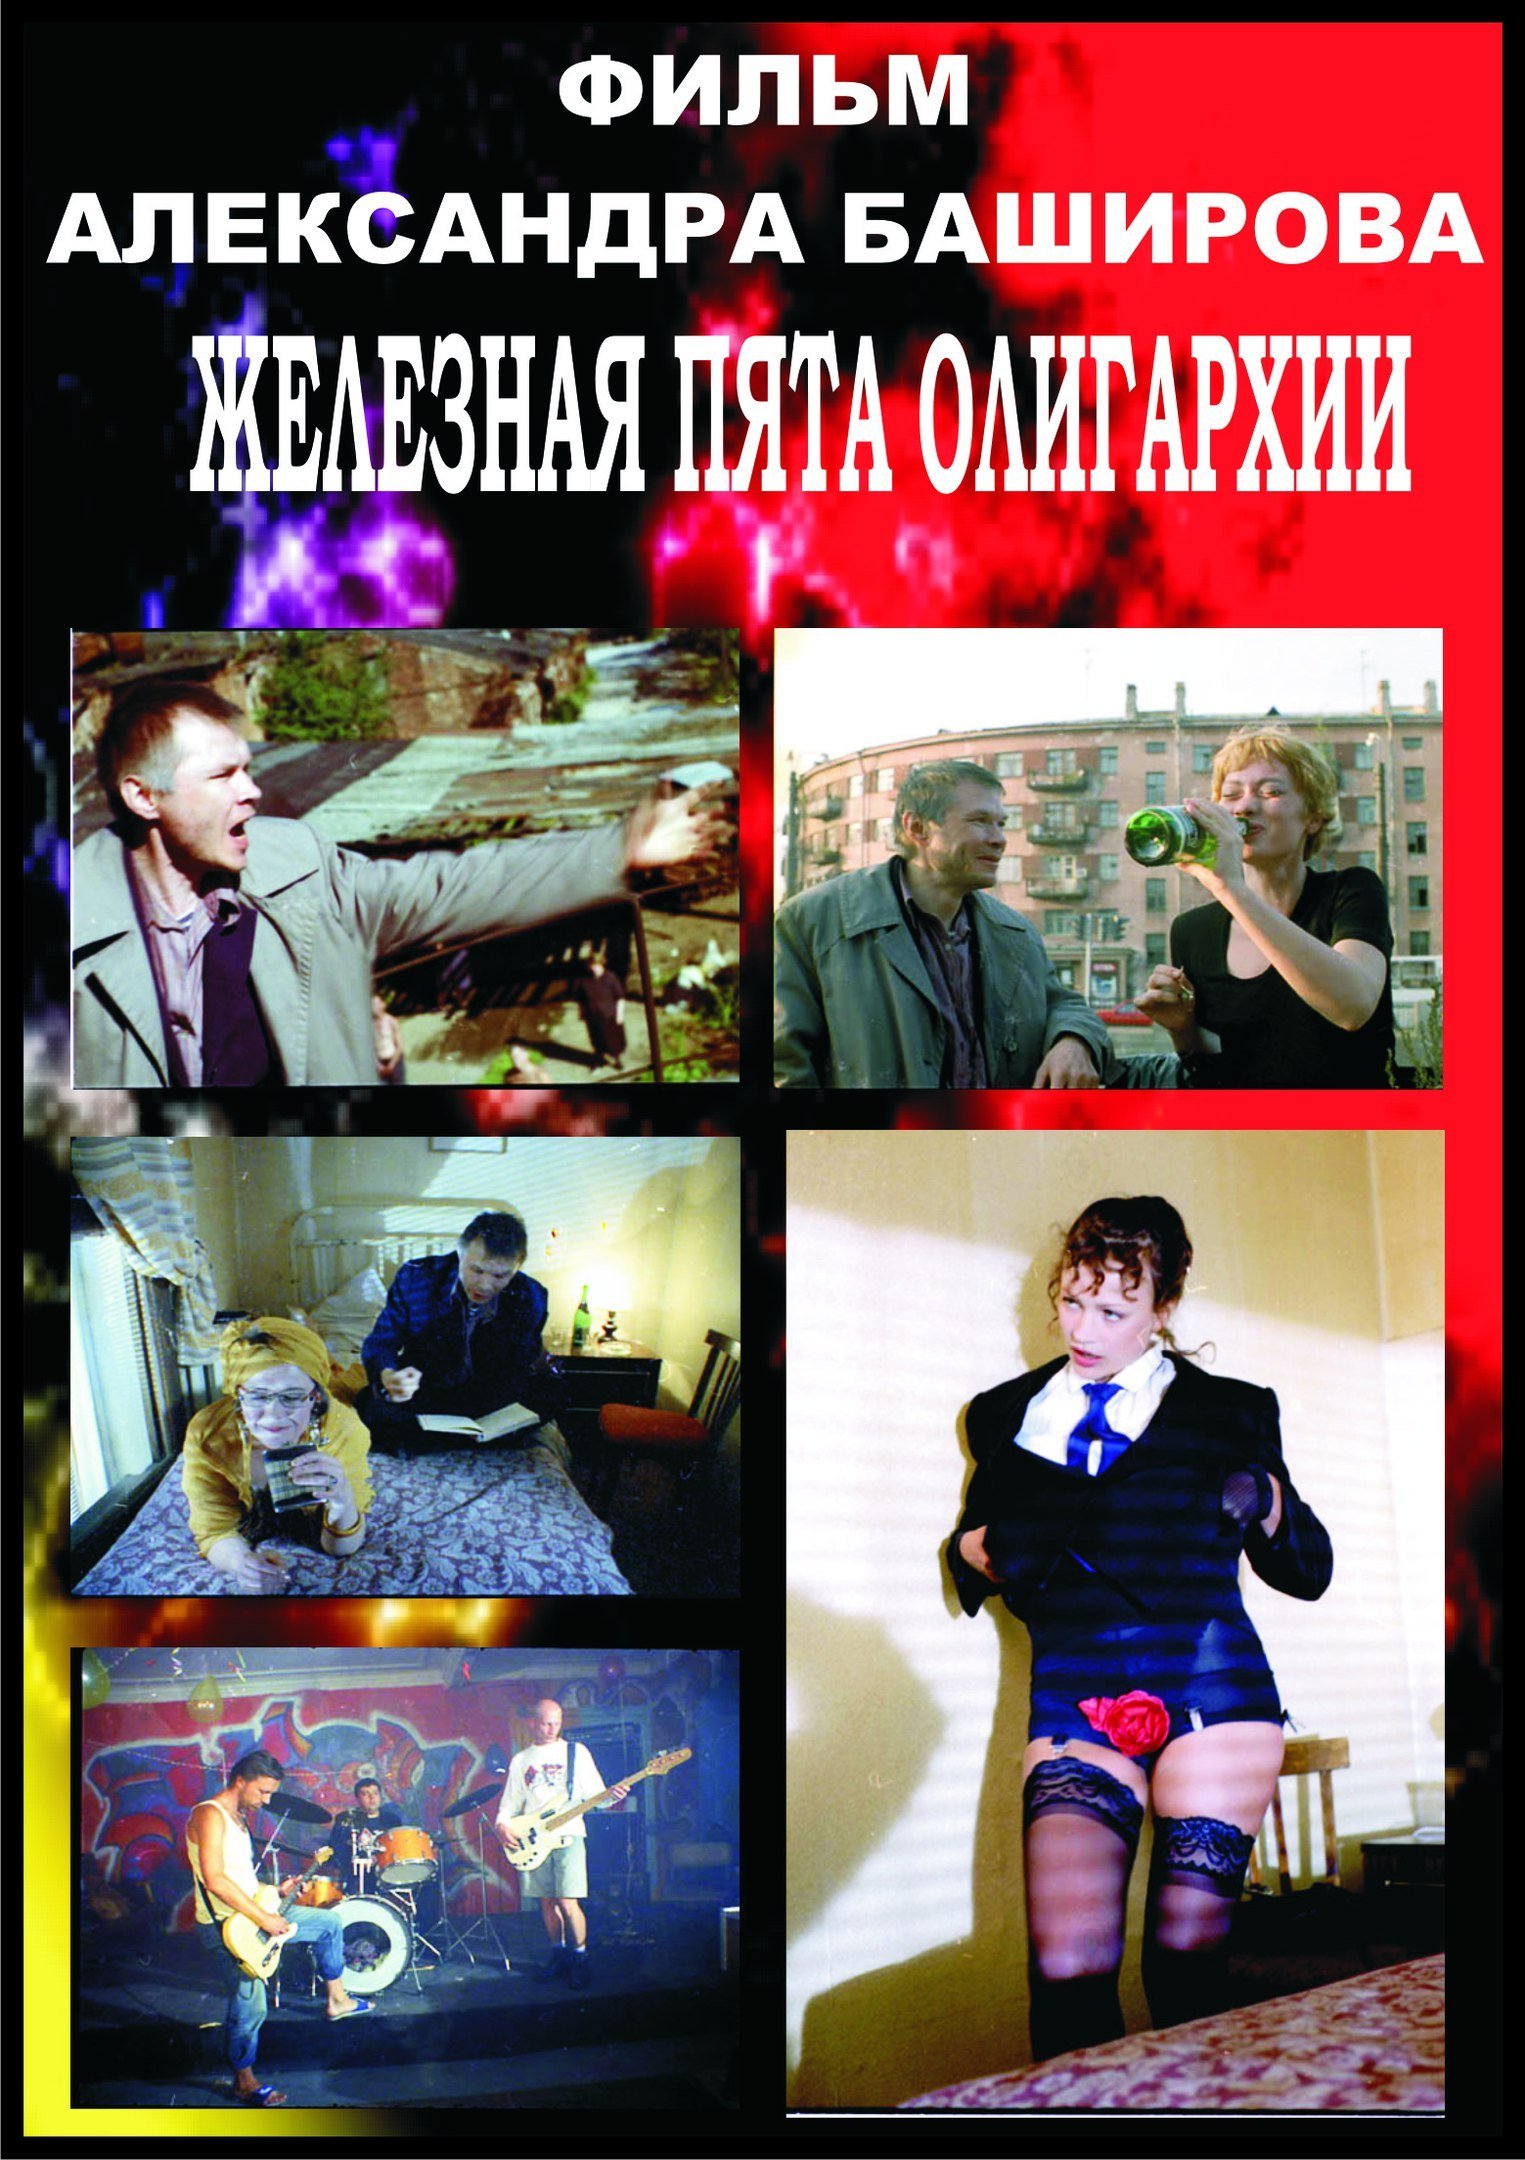 Zheleznaya pyata oligarkhii (1998) Screenshot 1 